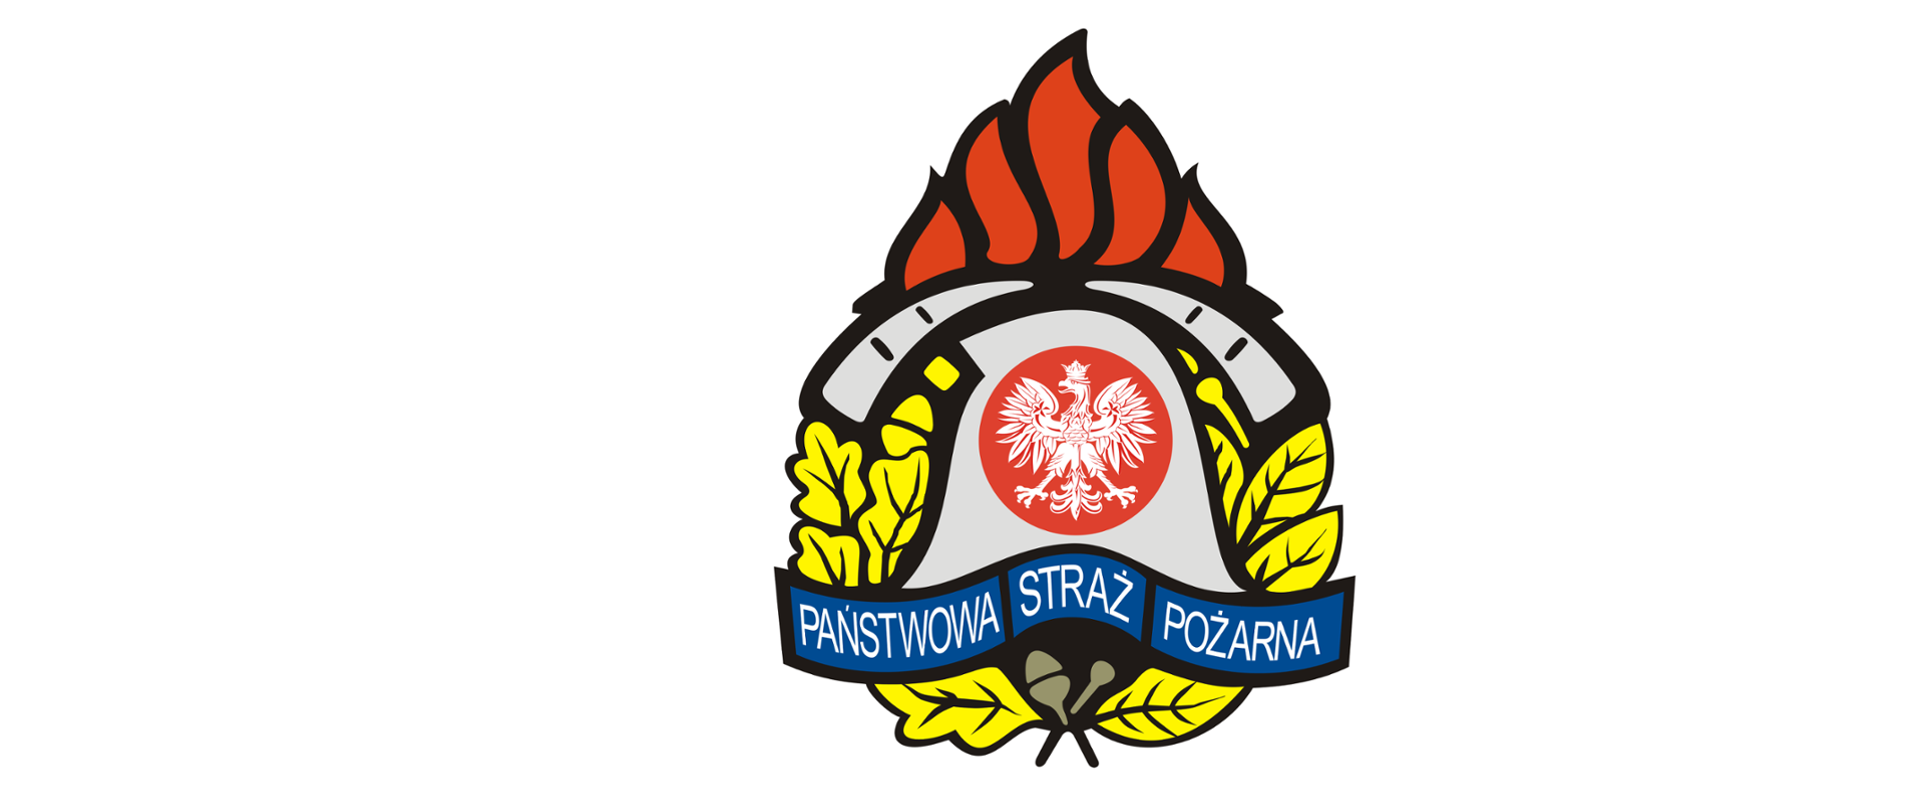 Zdjęcie przedstawia logo Państwowej Straży Pożarnej, składające się z hełmu strażackiego i skrzyżowanych za nim dwóch toporków. Na przodzie hełmu widać orła, a całość otaczają liście. U góry widoczny jest płomień.